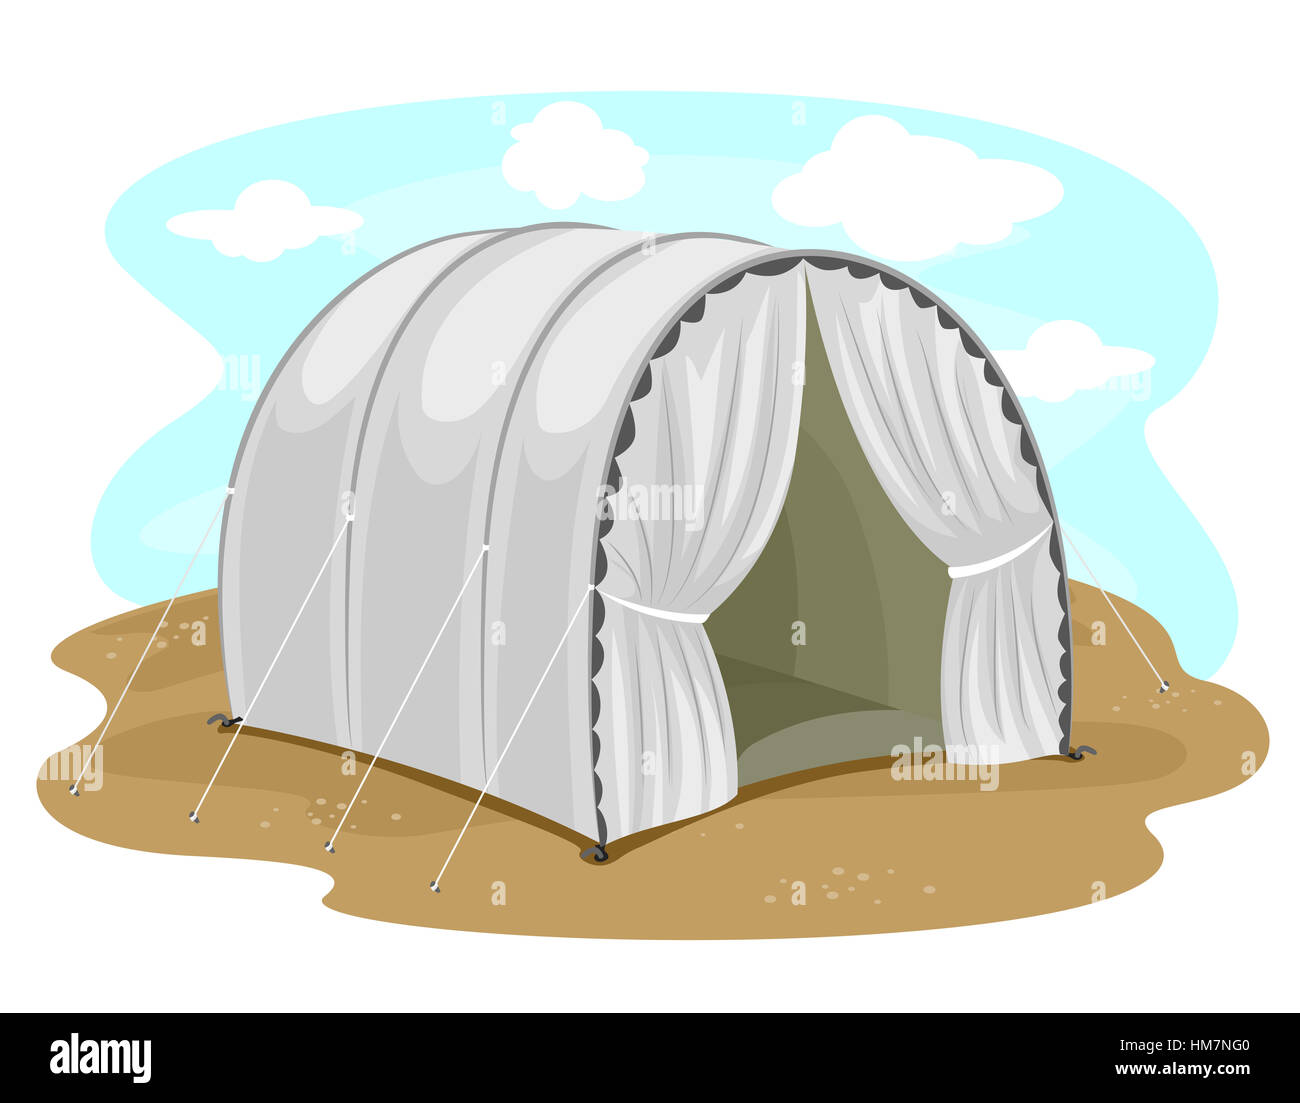 Abbildung mit einer vakanten Zelt in einem Flüchtlingslager Stockfoto